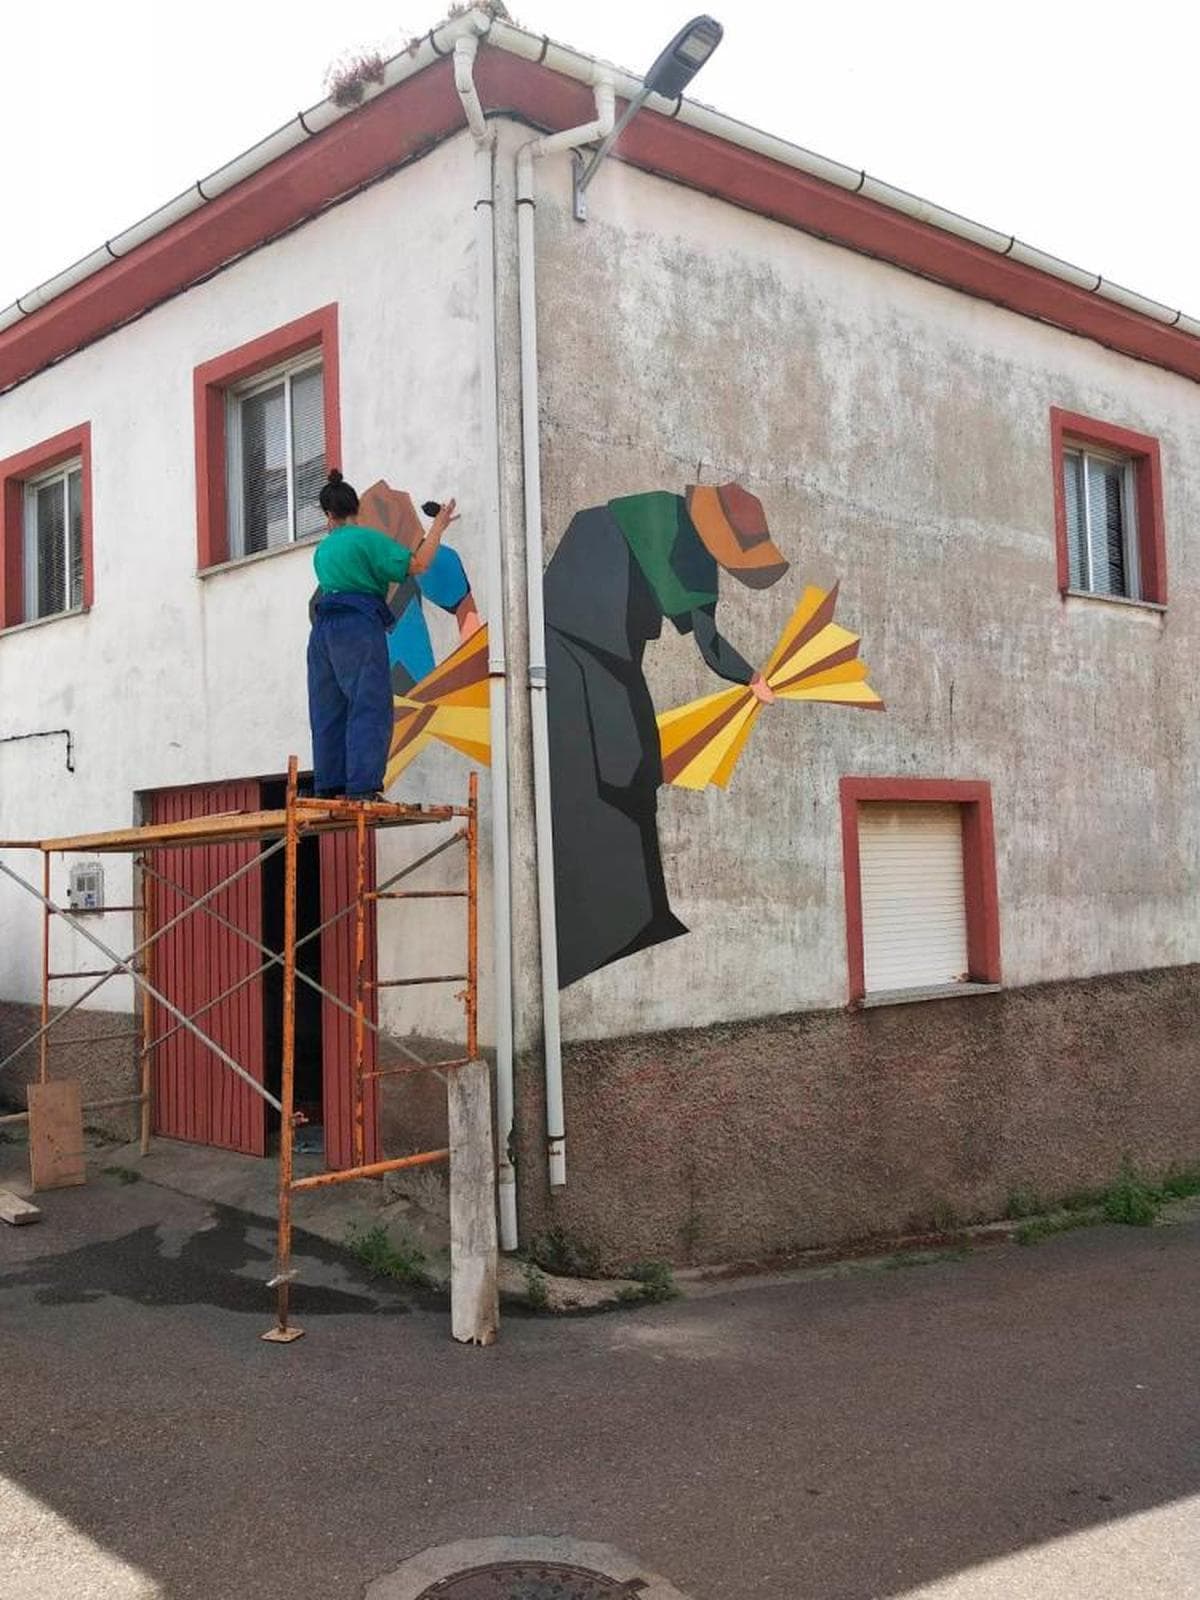 Los artistas decoran con sus proyectos las calles de Pereña